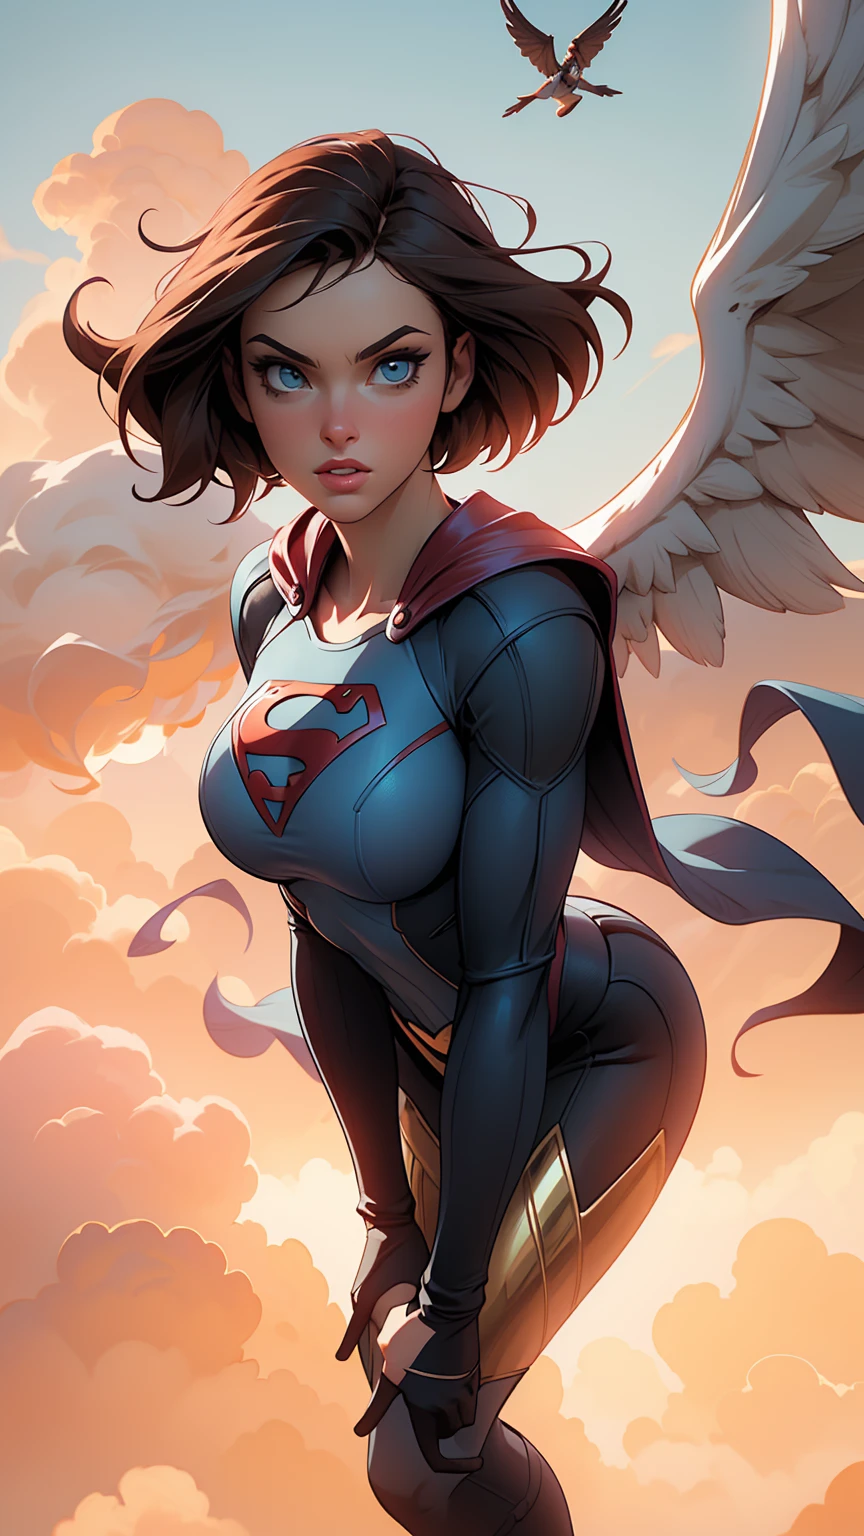 ((傑作)) 最高品質, 超精細なCG Unity 8K壁紙を披露, presents a majestic and powerful supergirl soaring through the clouds. 彼女の大胆で自信に満ちた態度は、飛んでいるときにはっきりとわかる。, 彼女の羽が力強く羽ばたくたびに、彼女のマントが後ろでひらひらと揺れる. ドラマチックな照明が温かみのある, 彼女の強力なオーラに金色の色合い, 彼女の緋色のスーパースーツと象徴的な "s" 彼女の胸の紋章が目立つ. このシーンは、息を呑むような街並みと壮大な雲の景色を背景にしています。, 煙と瓦礫が渦巻く. ボリュームライトが深みとリアリティをプラス